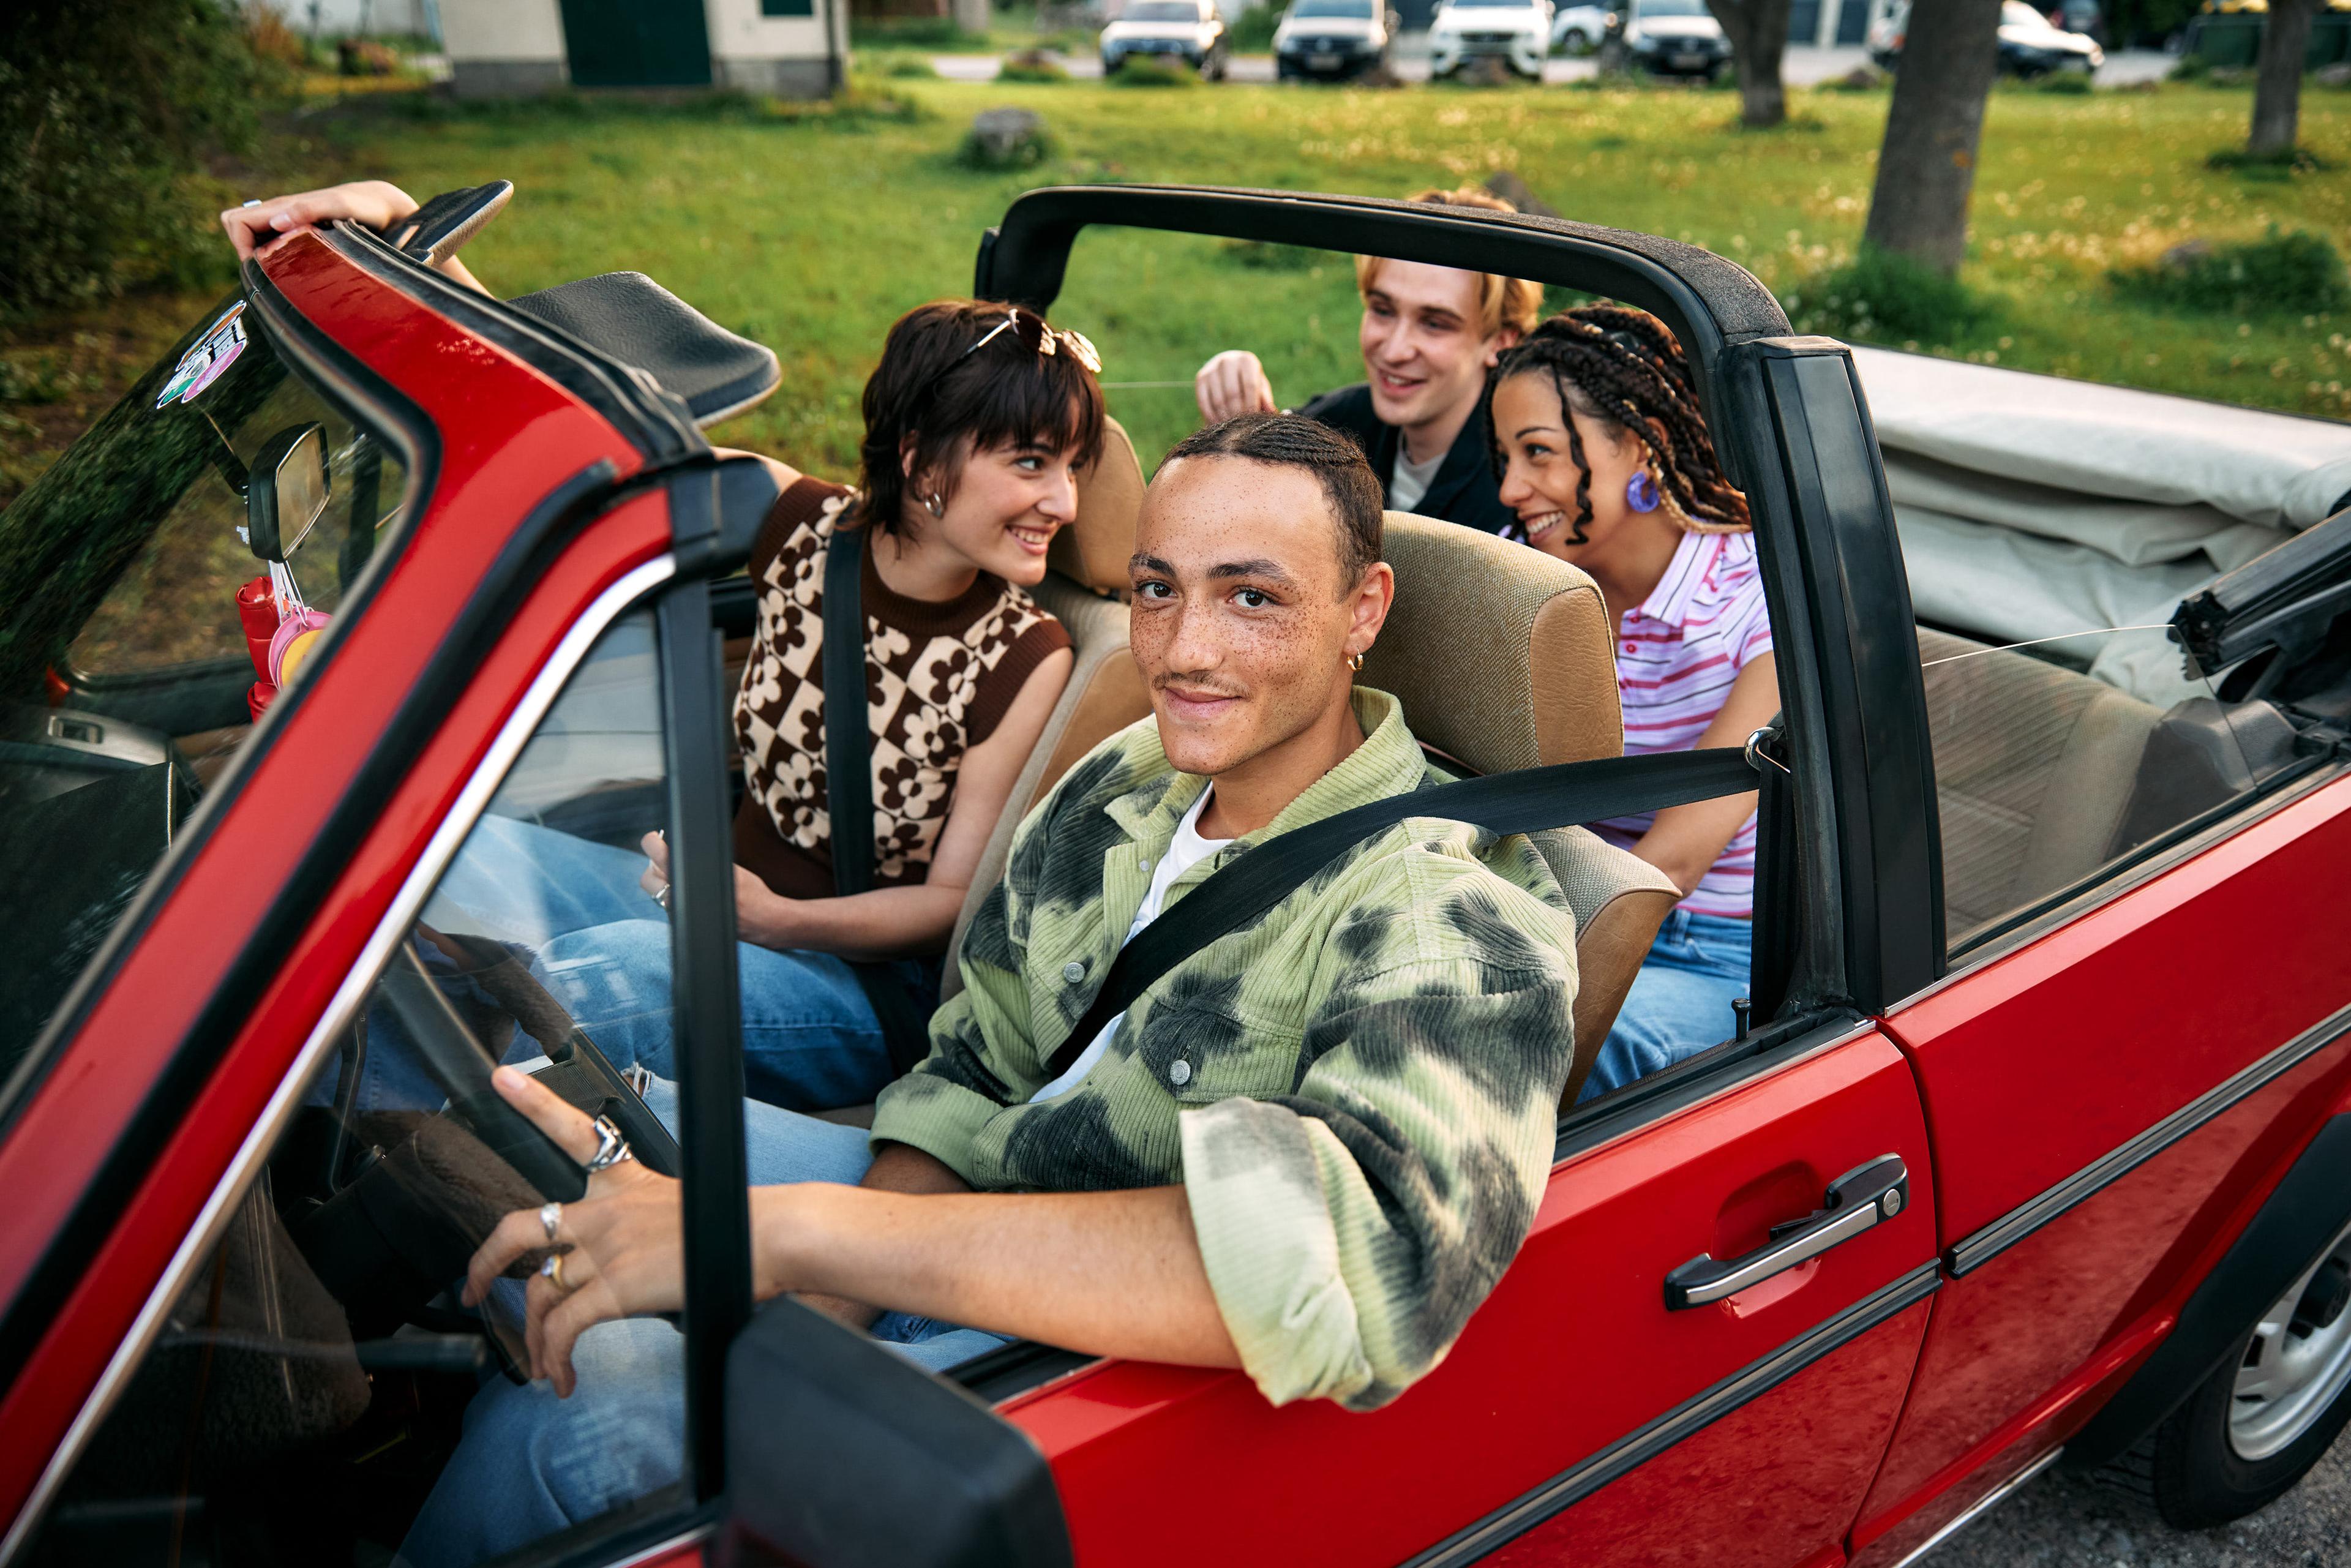 Zu sehen ist ein rotes Cabrio und vier Jugendliche. Während der Fahrer schon angeschnallt auf seinem Platz sitz, sind die anderen dabei, voller Vorfreude einzusteigen.